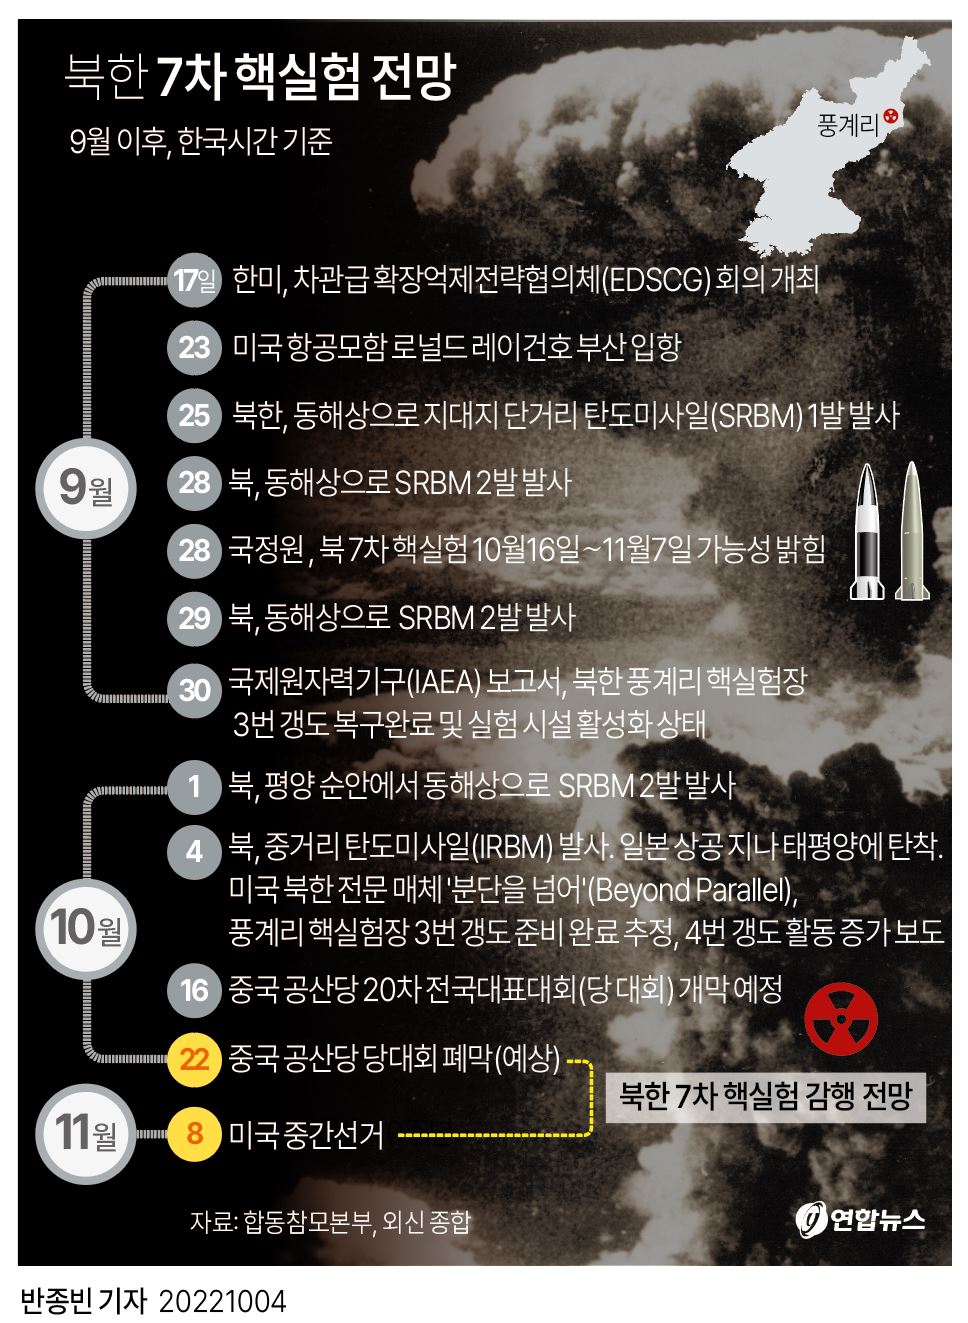  북한 7차 핵실험 전망